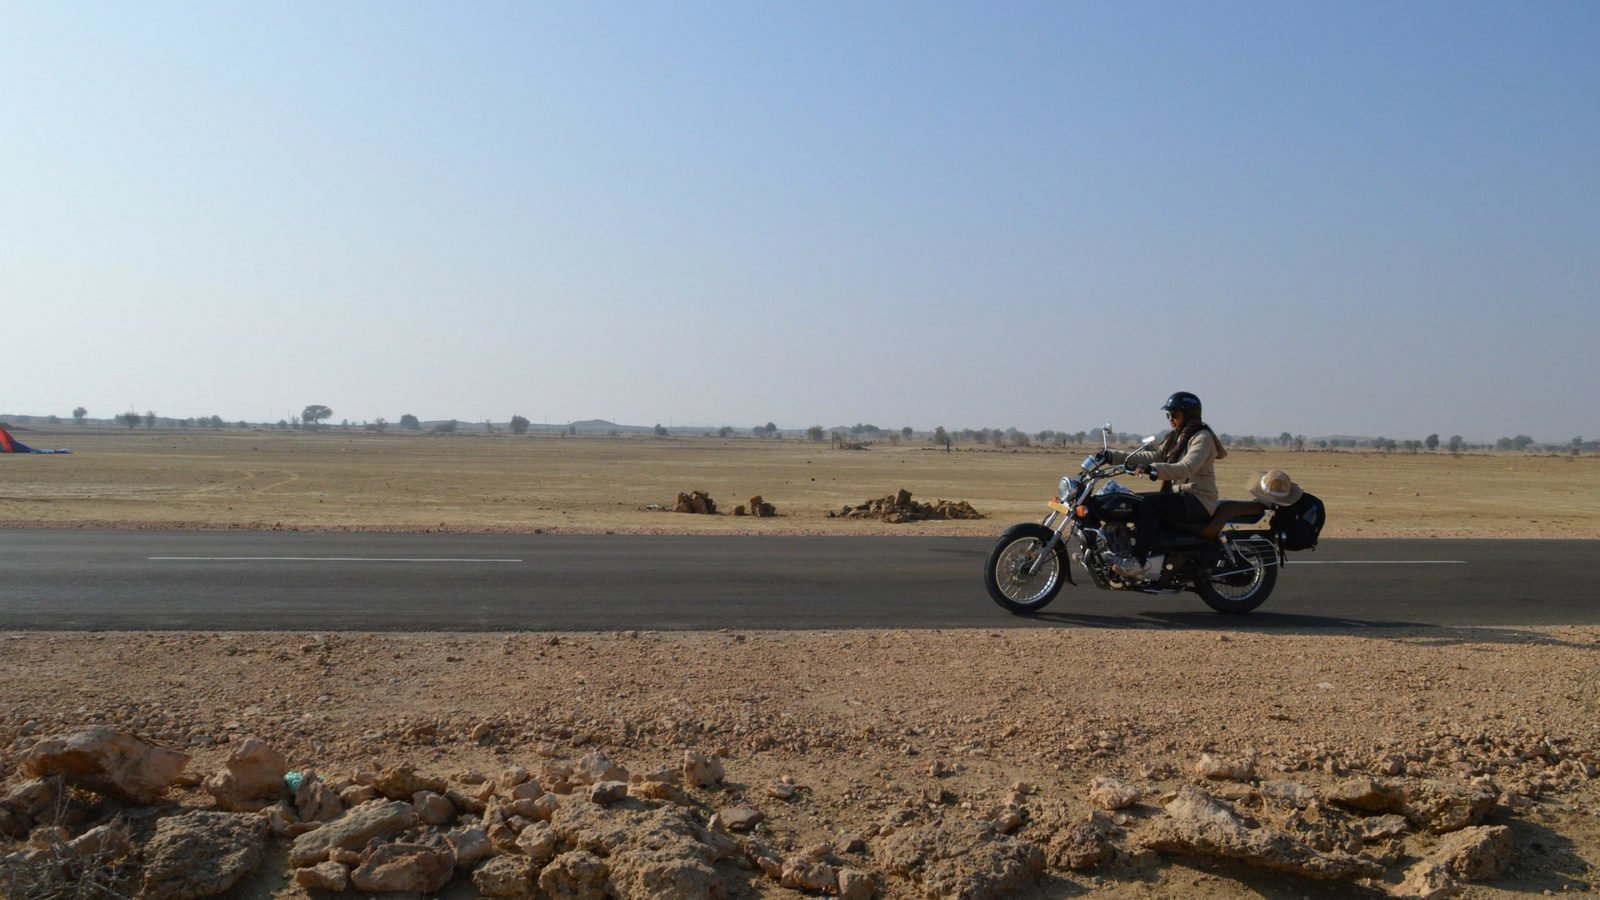 jaipur to jaisalmer bike trip